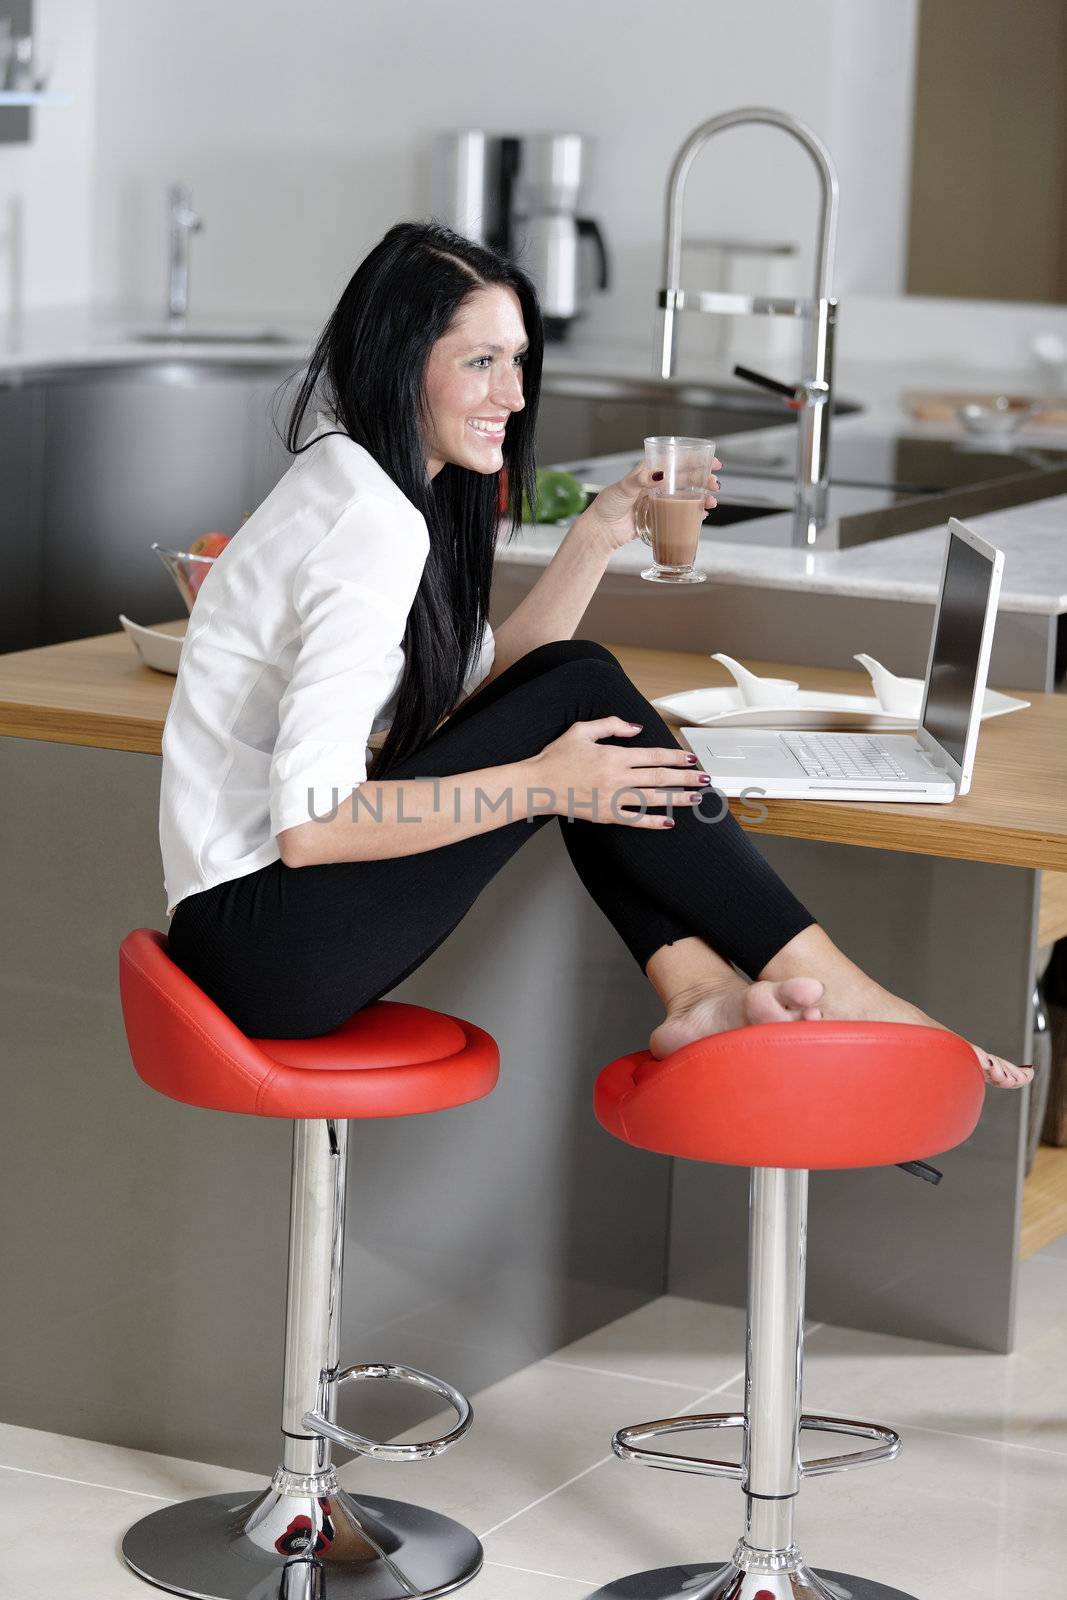 Woman taking a coffee break by studiofi